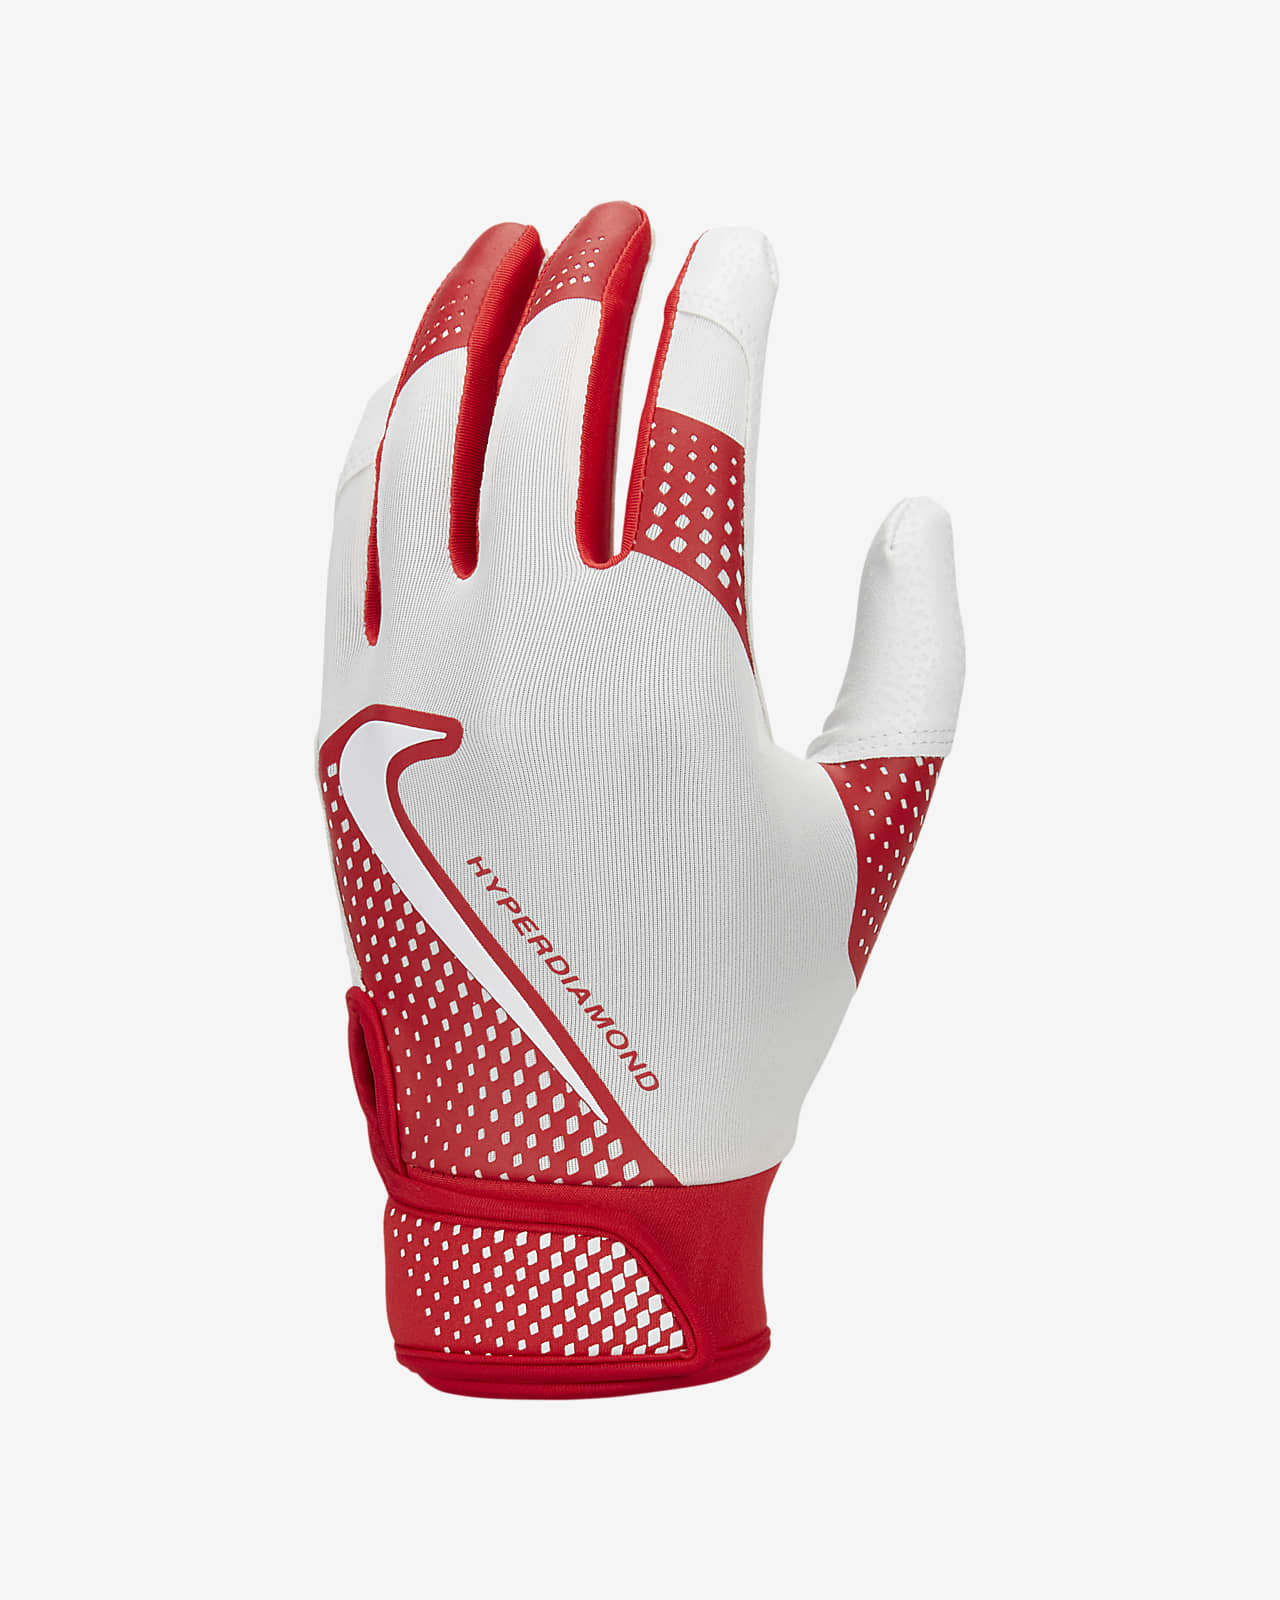 Behoren Burgerschap haar Nike Hyperdiamond Select Softball Batting Gloves. Nike.com